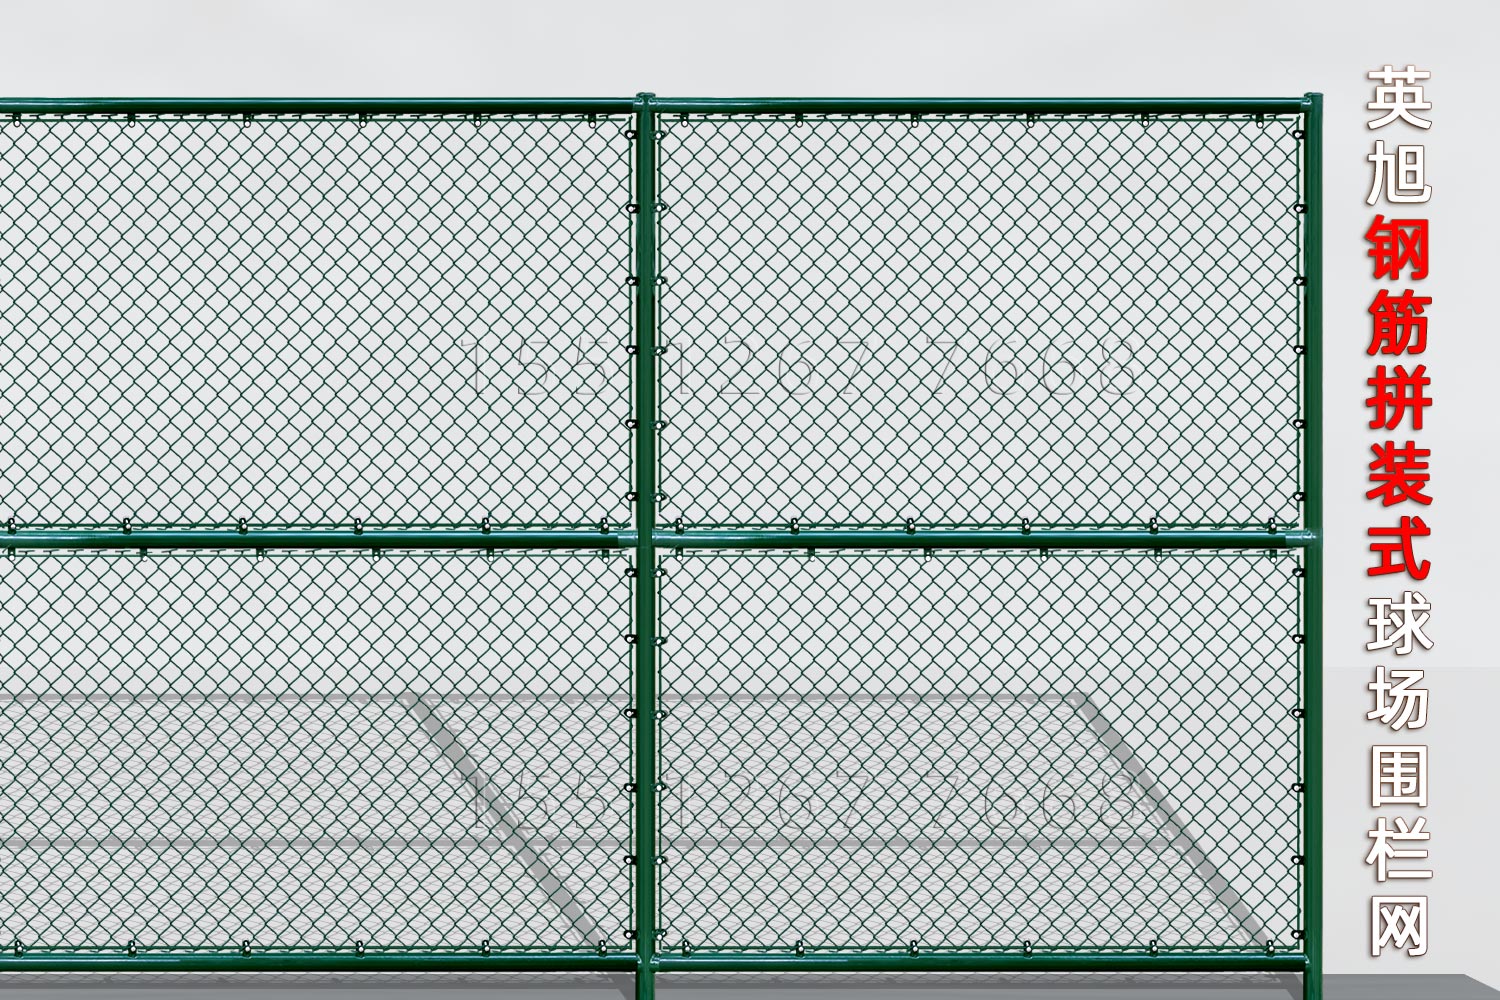 福建钢筋组装式球场围栏网